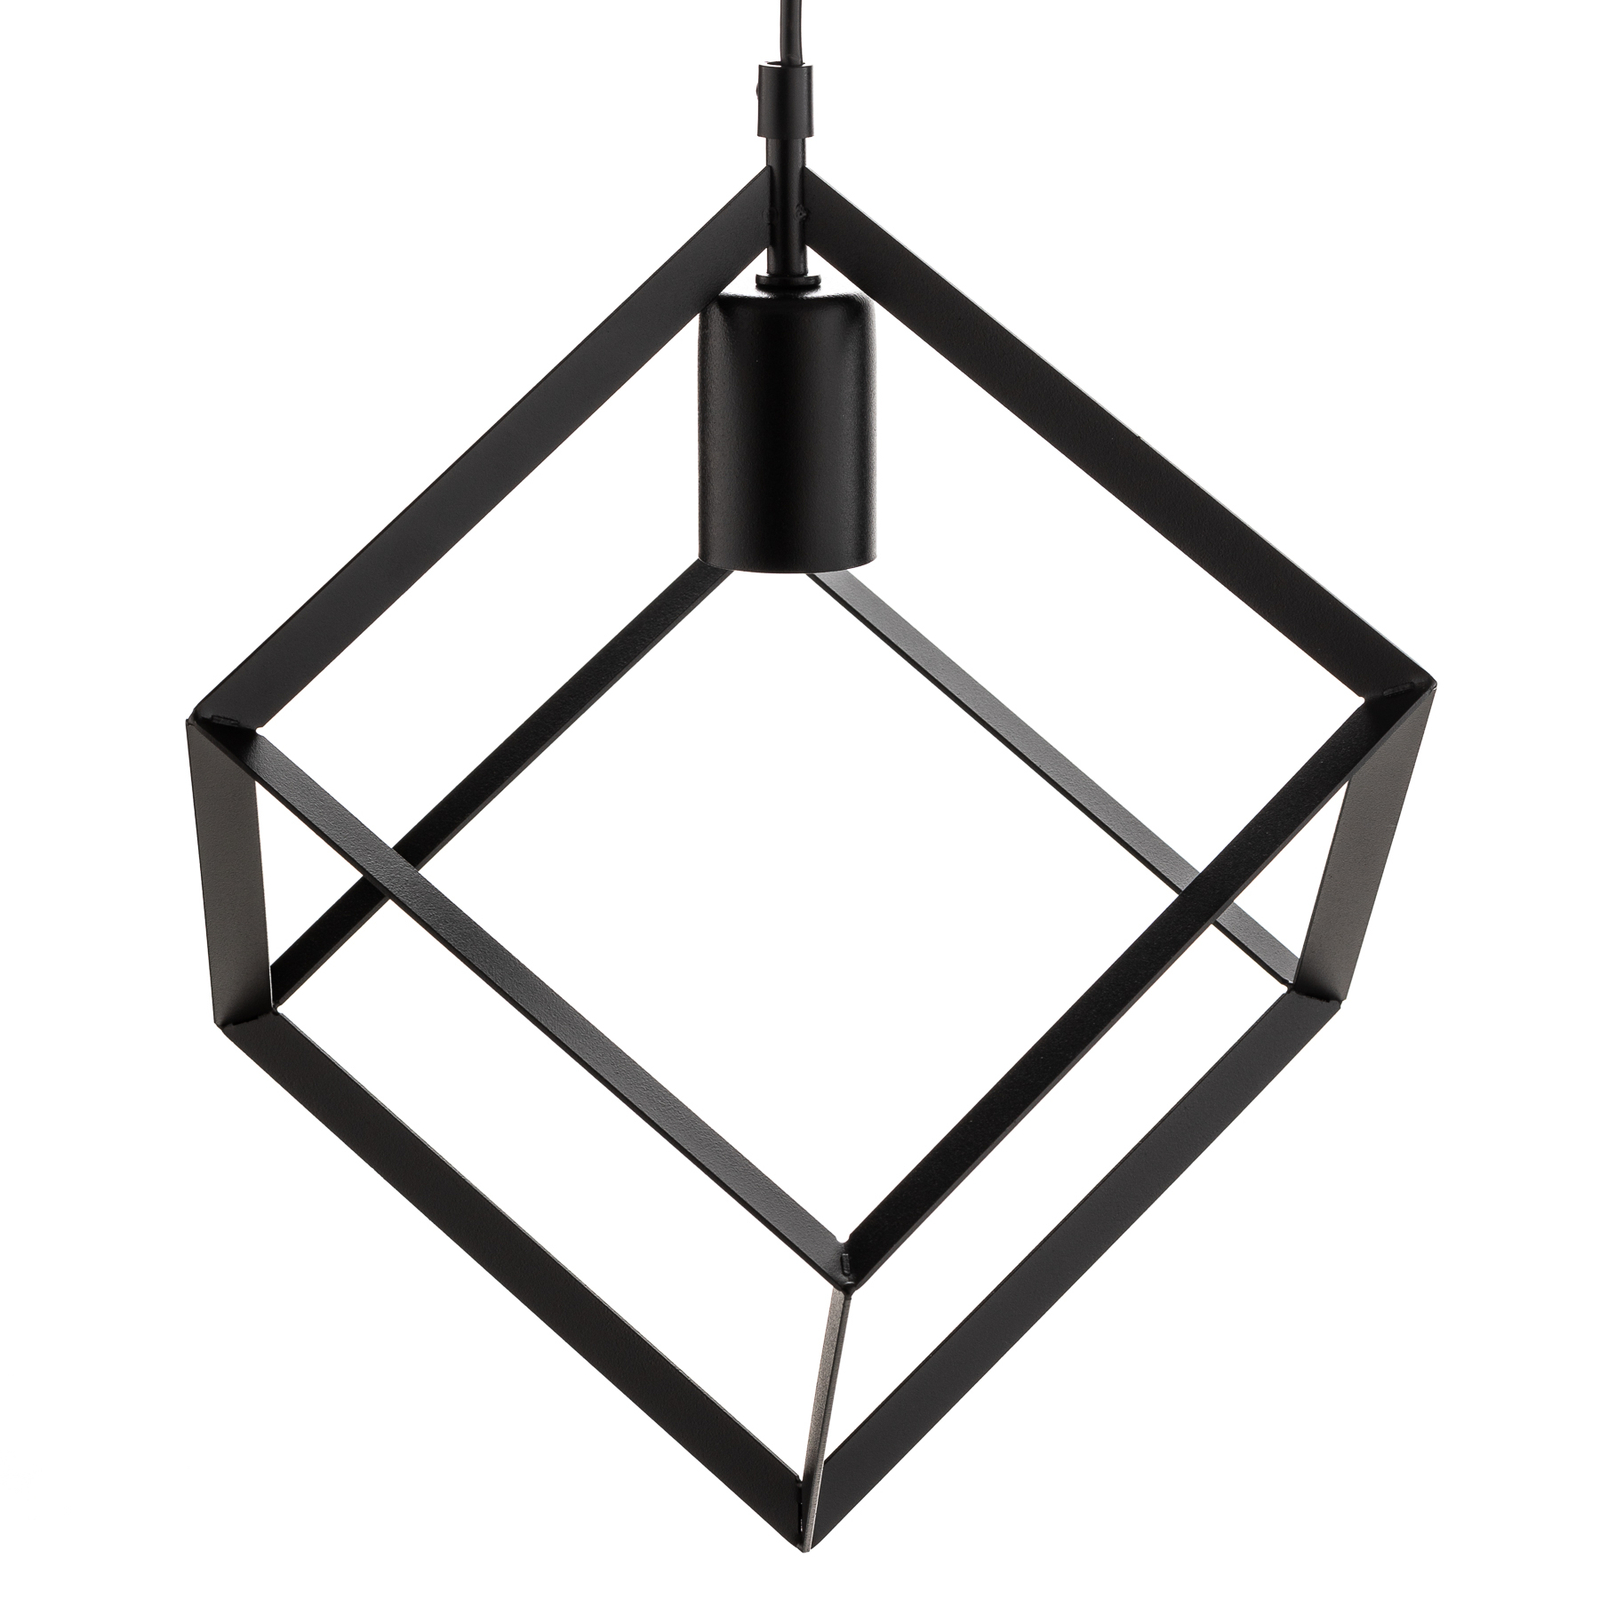 Lampa wisząca Cube 1 z metalową kostką, 1-pkt.